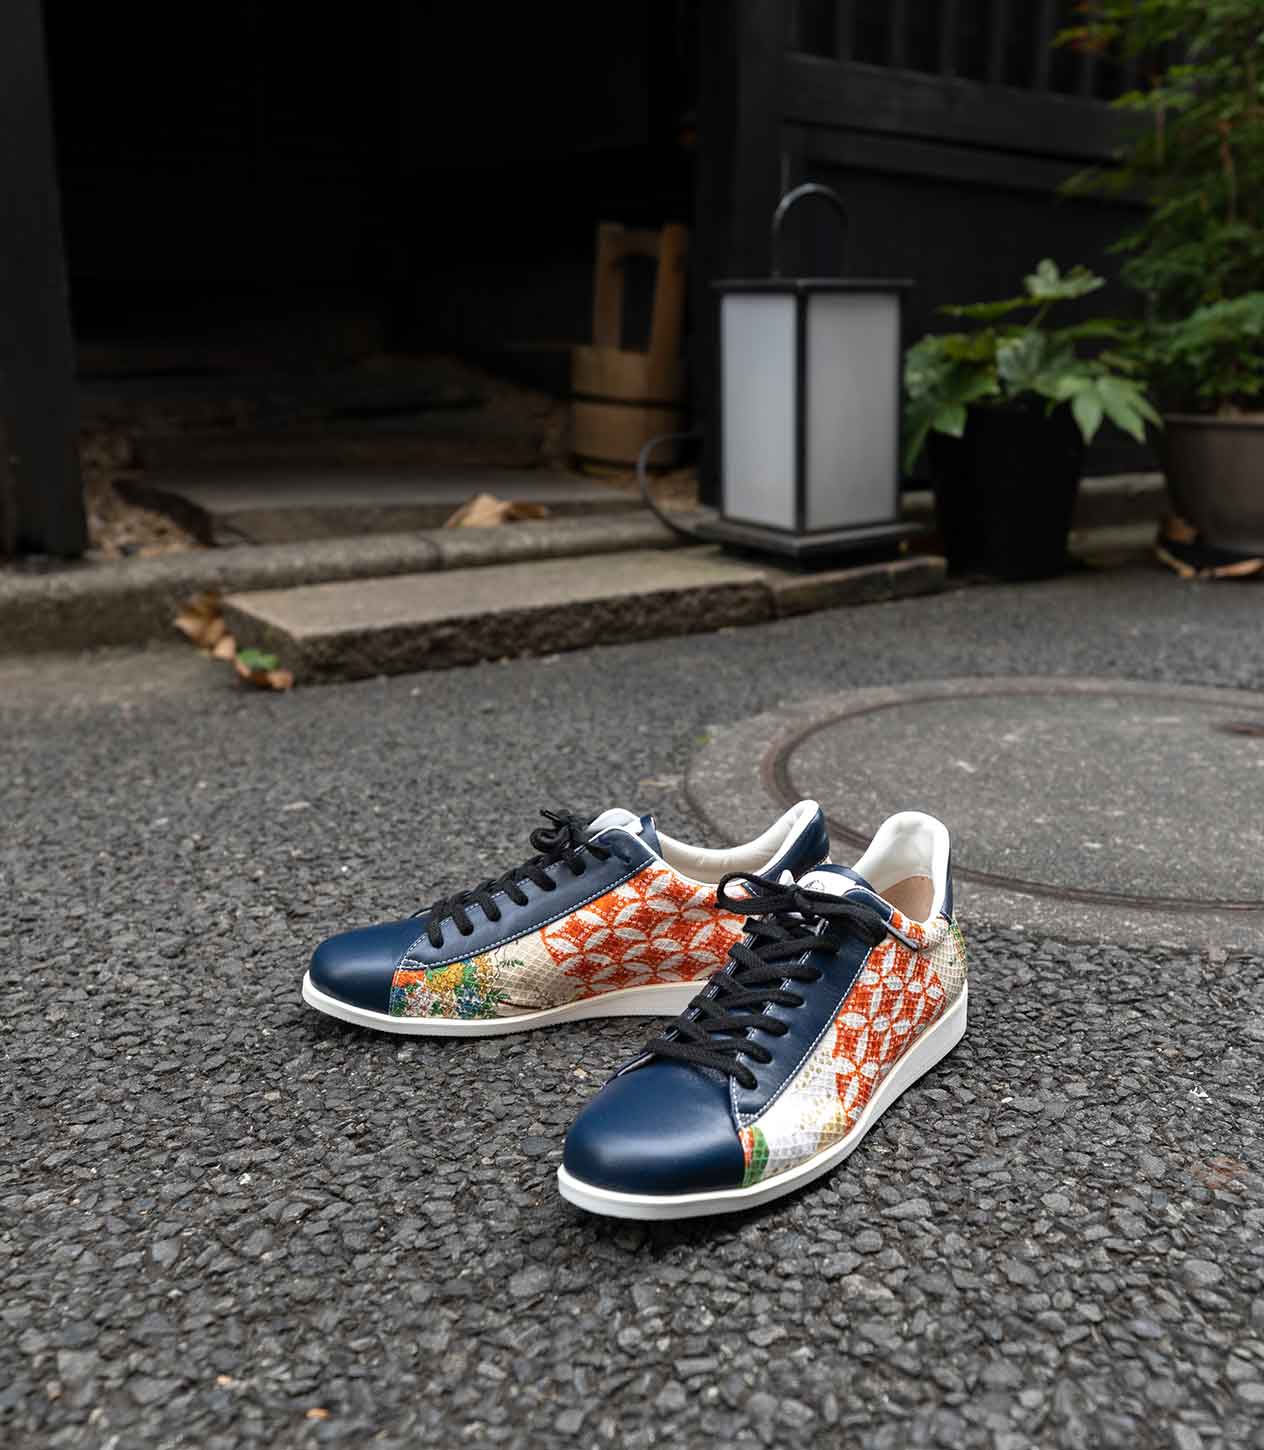 Japanese sneakers